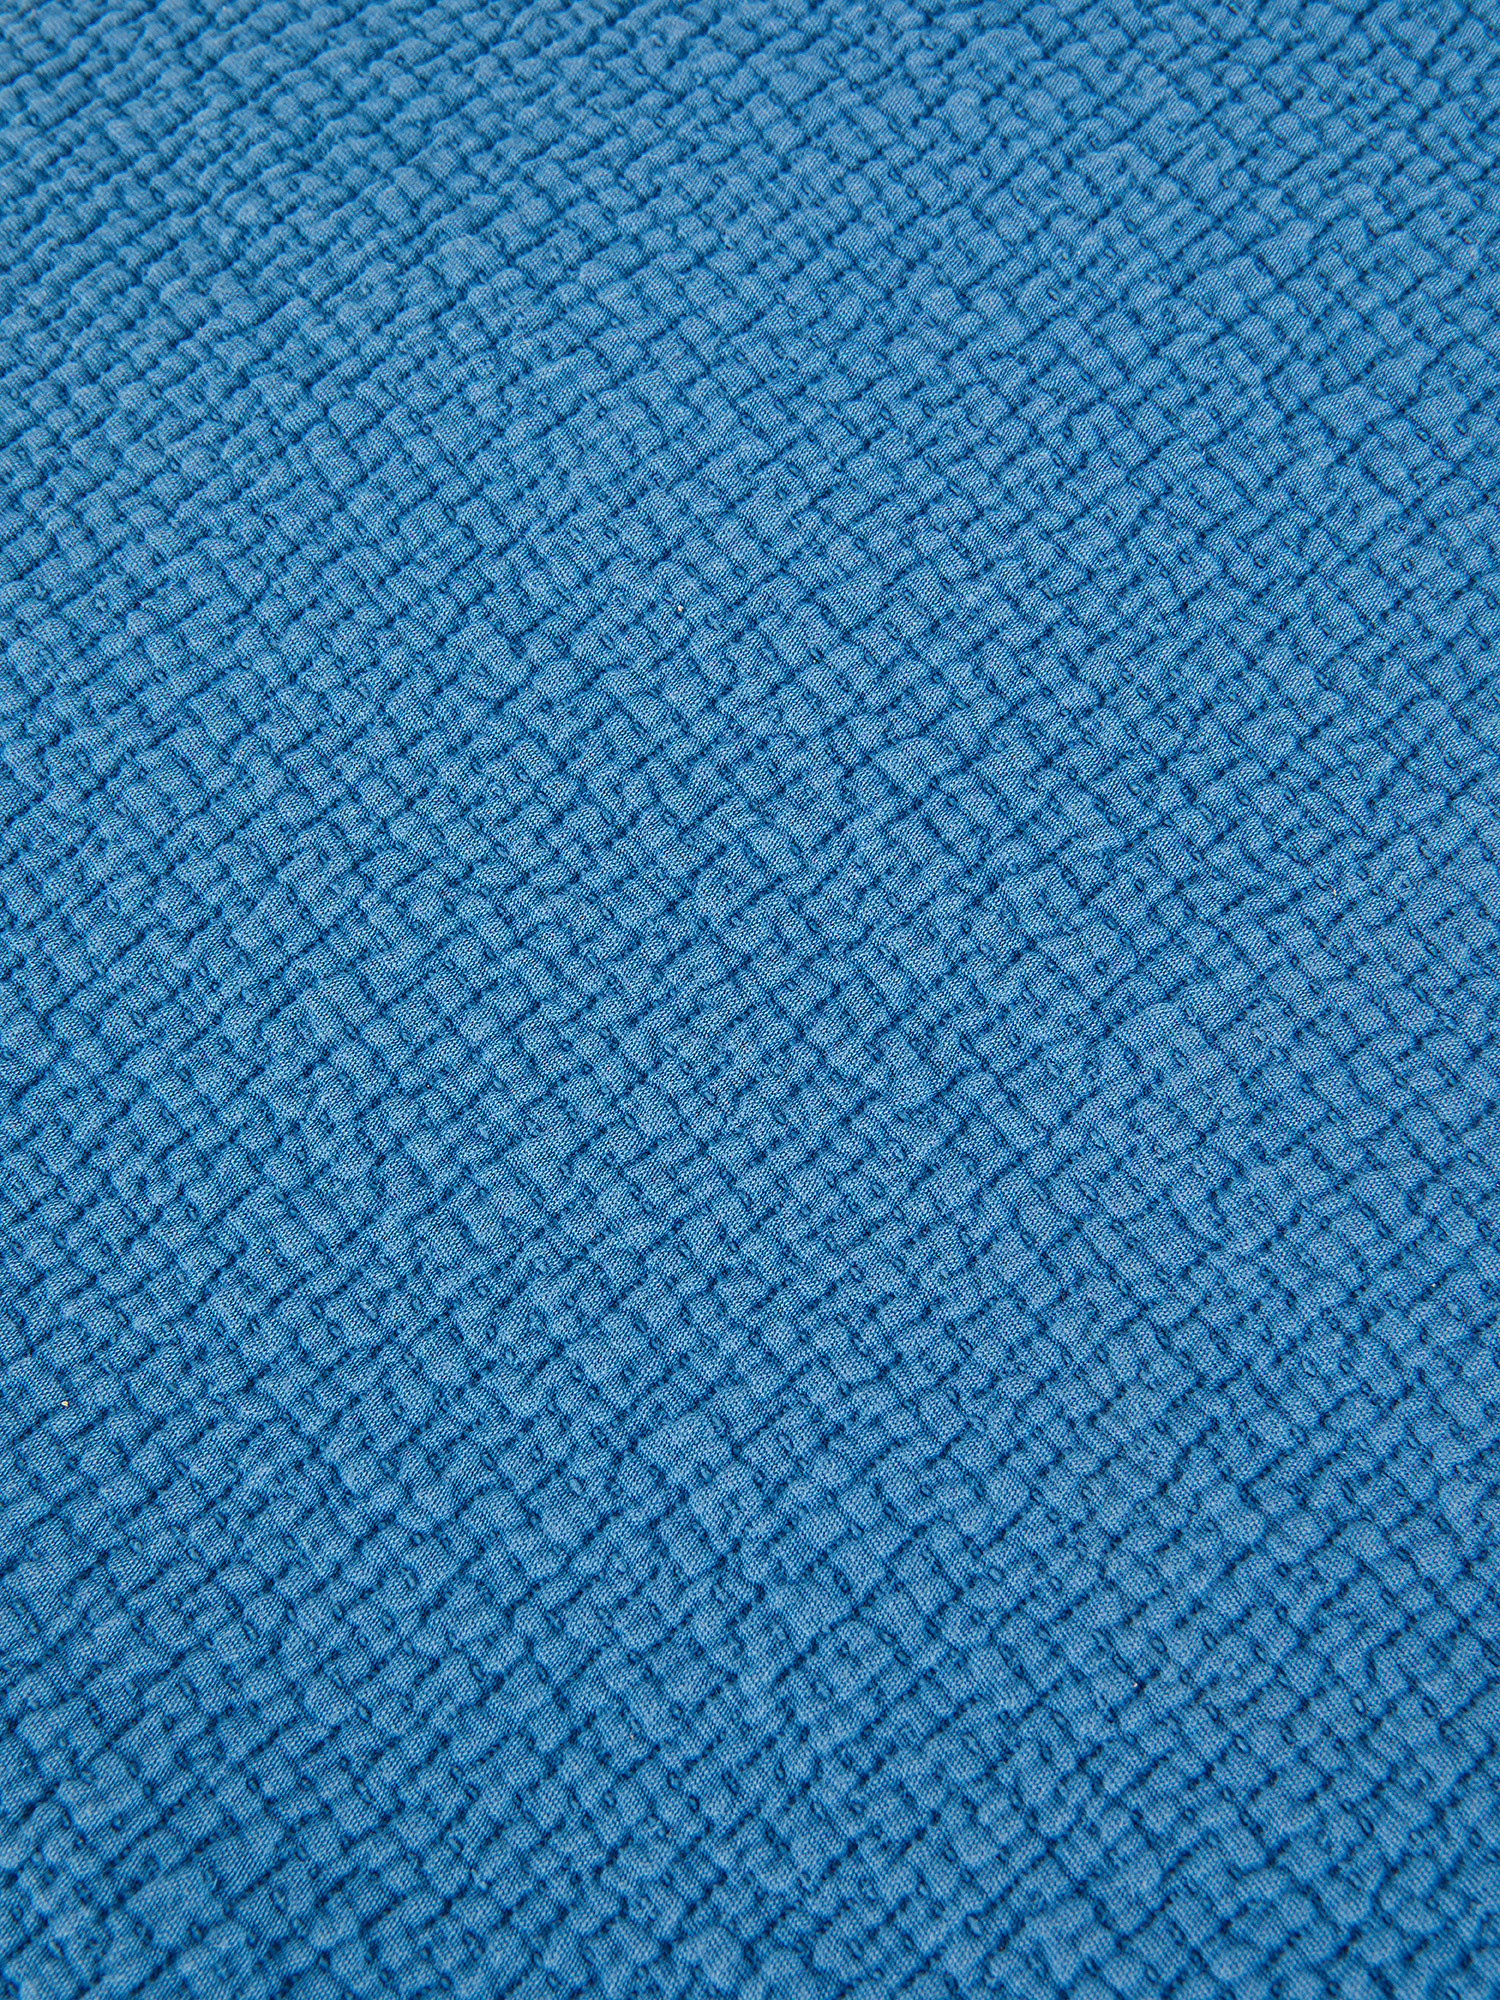 Solid color 100% cotton bedspread, Blue, large image number 1